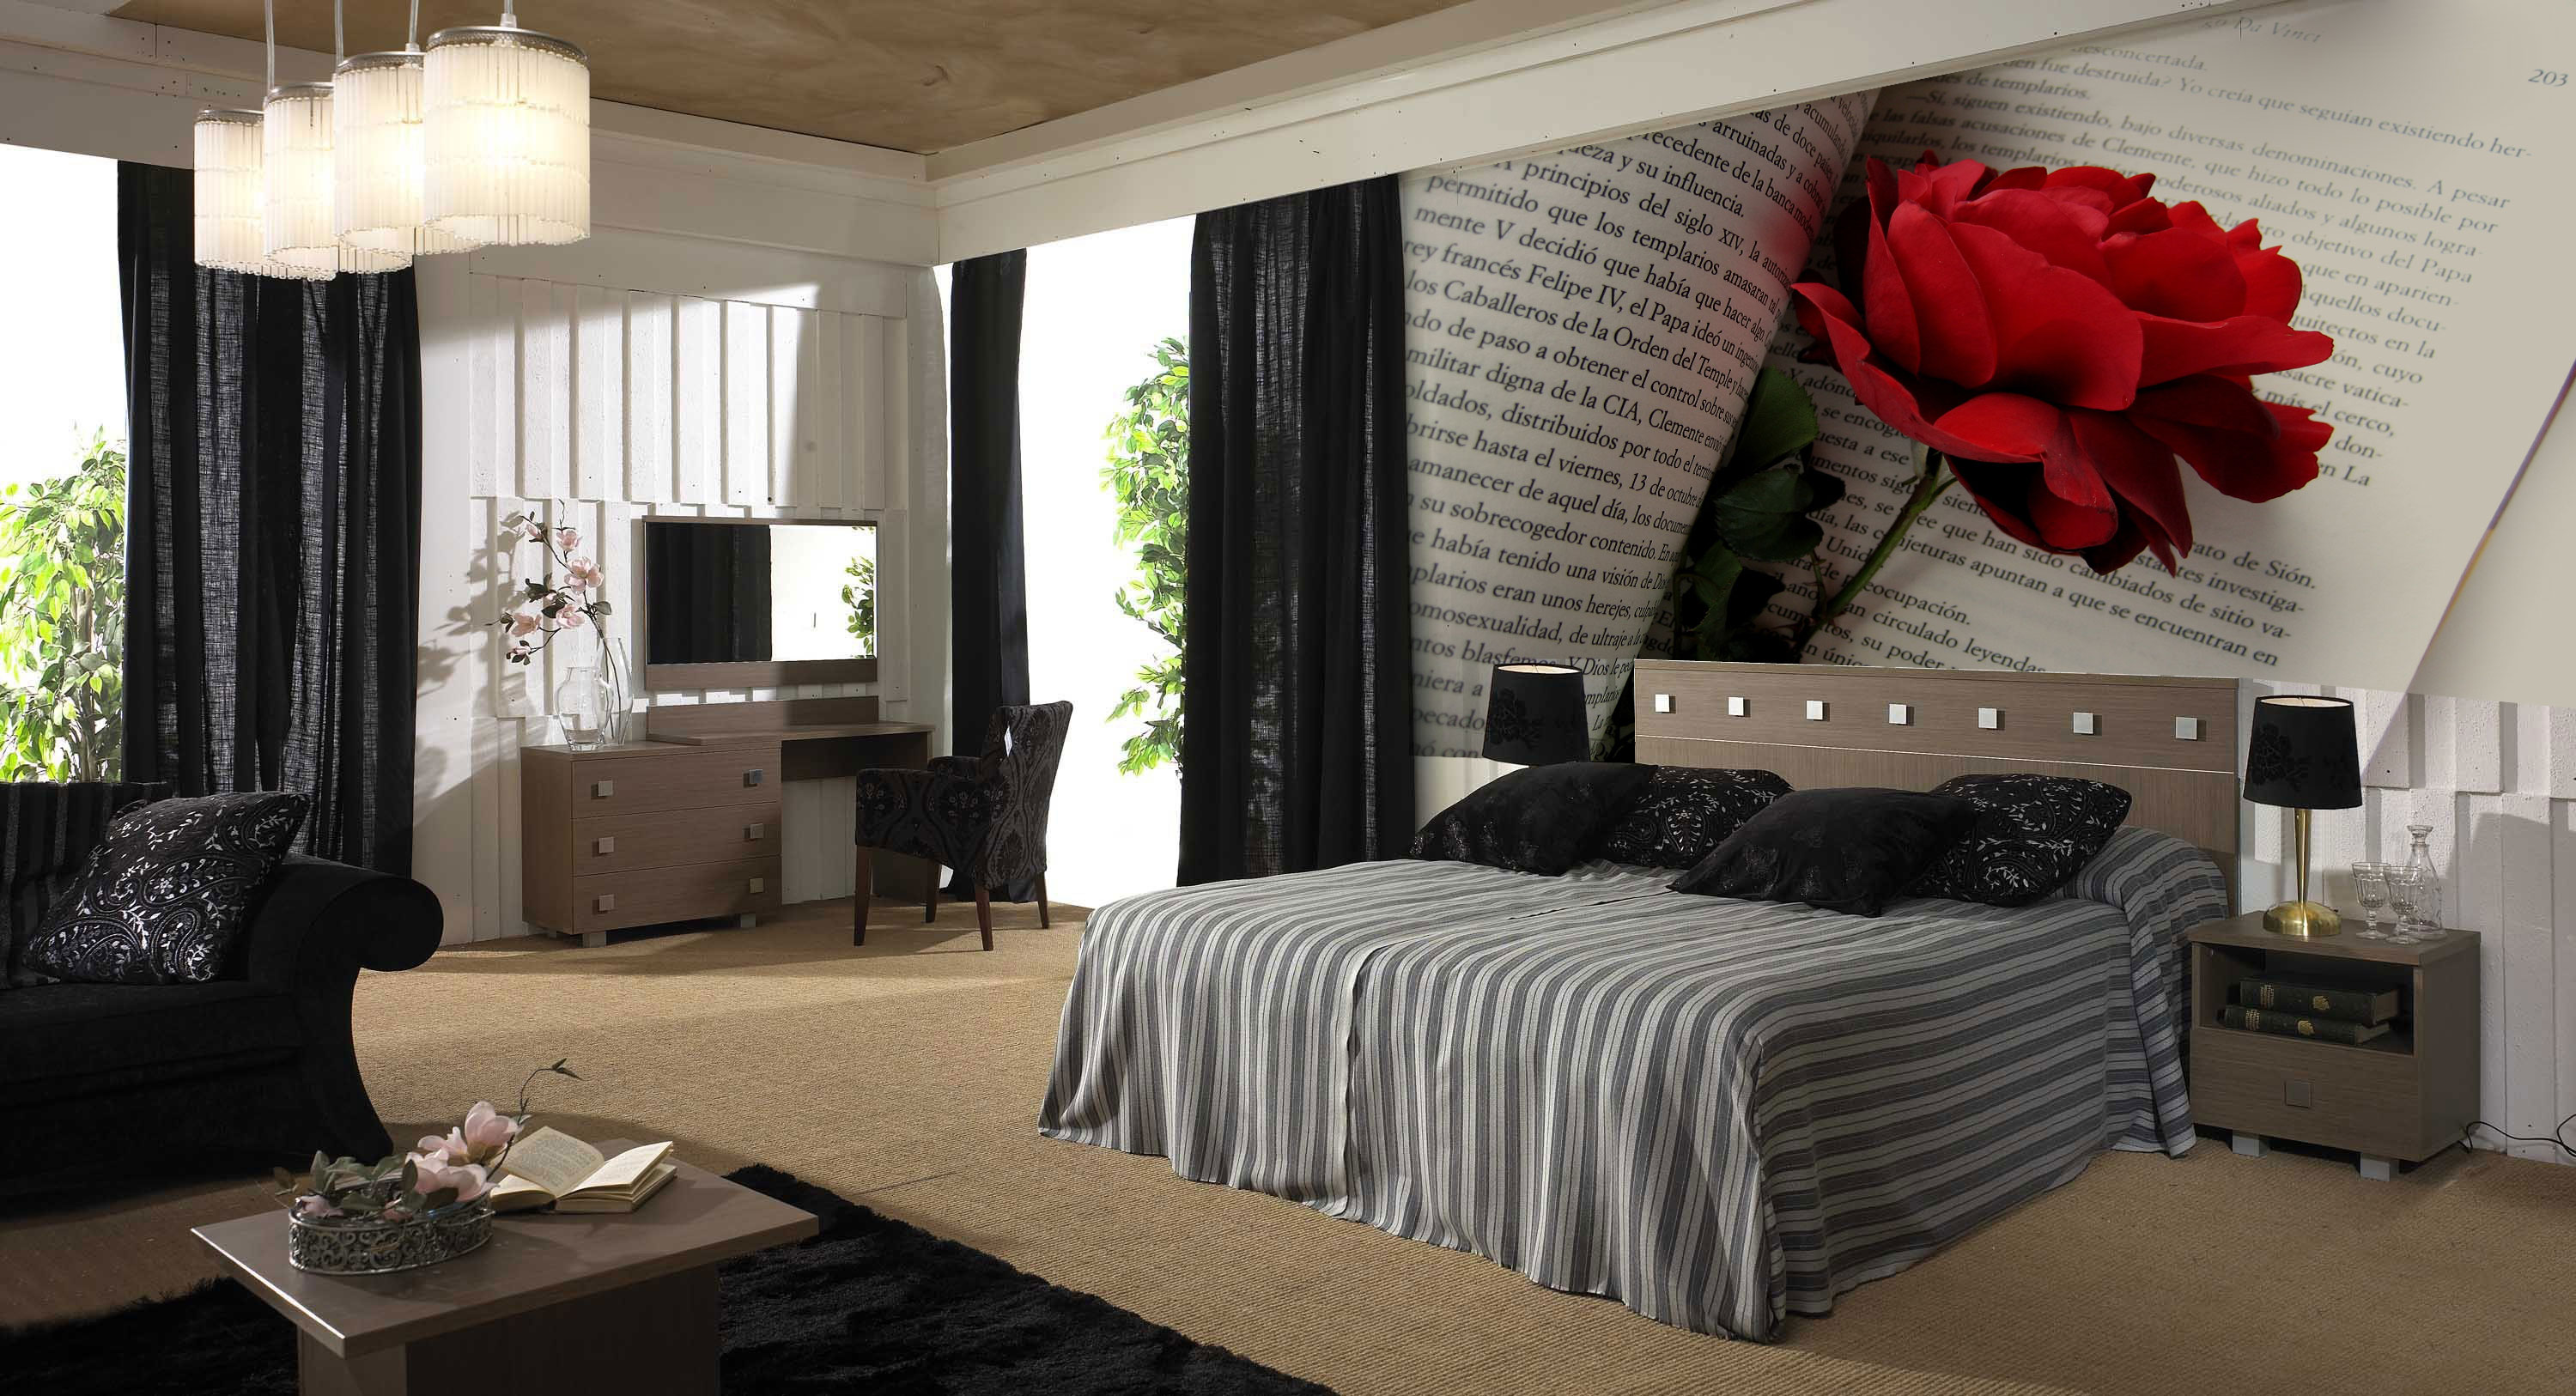 Φωτογραφία ταπετσαρία με ένα τριαντάφυλλο στο υπνοδωμάτιο